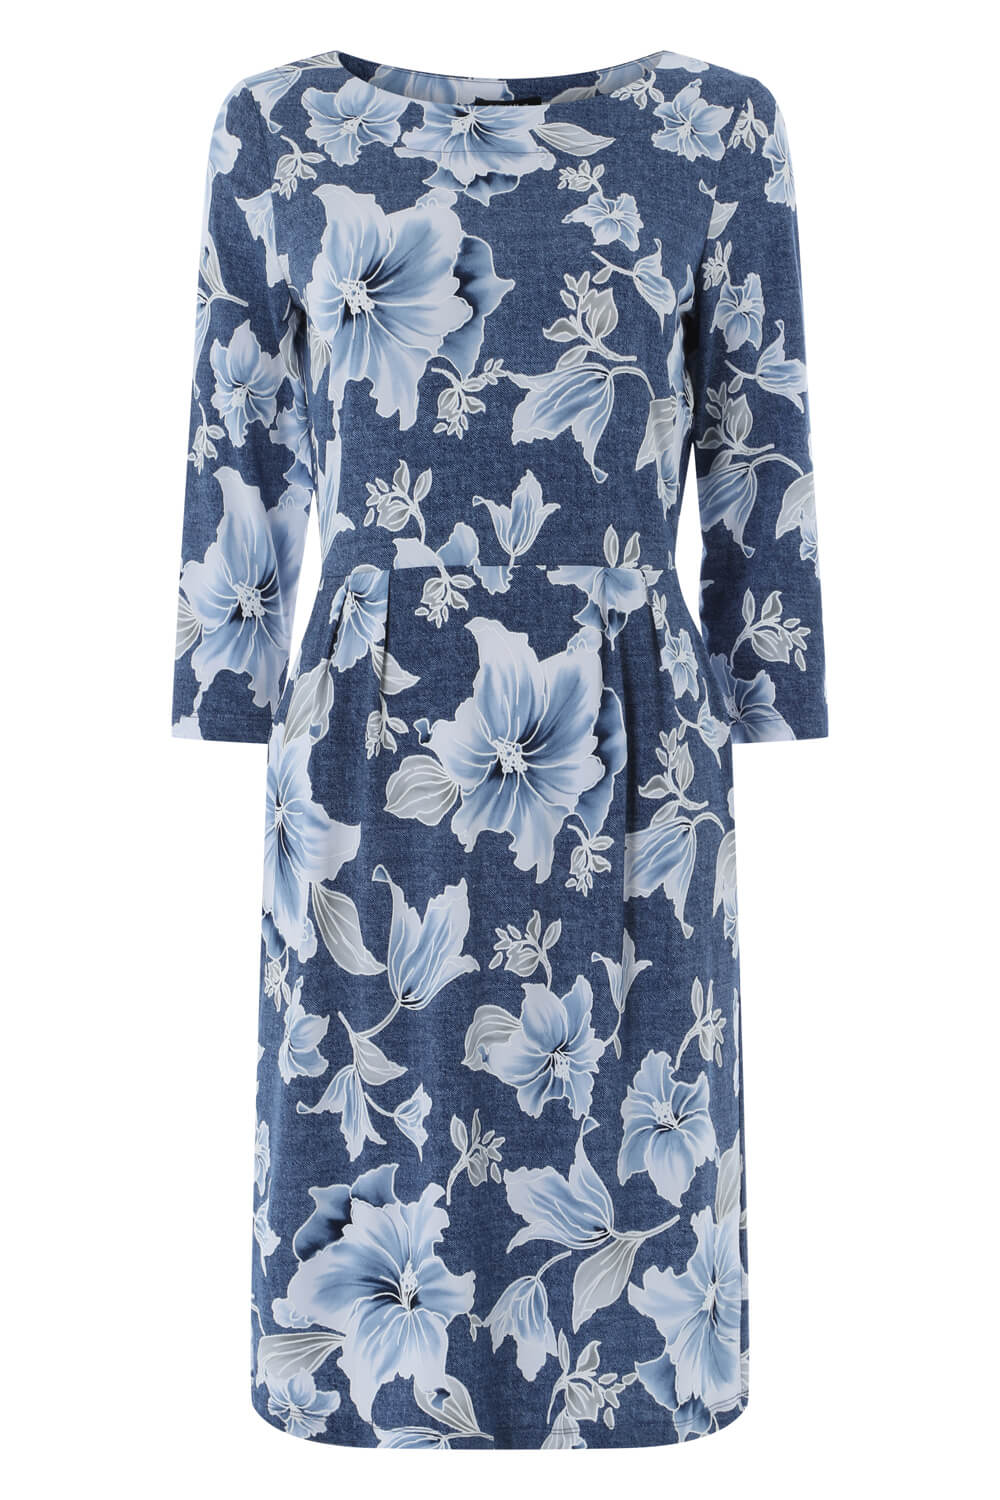 Blue Floral Print Pocket Dress, Image 4 of 4